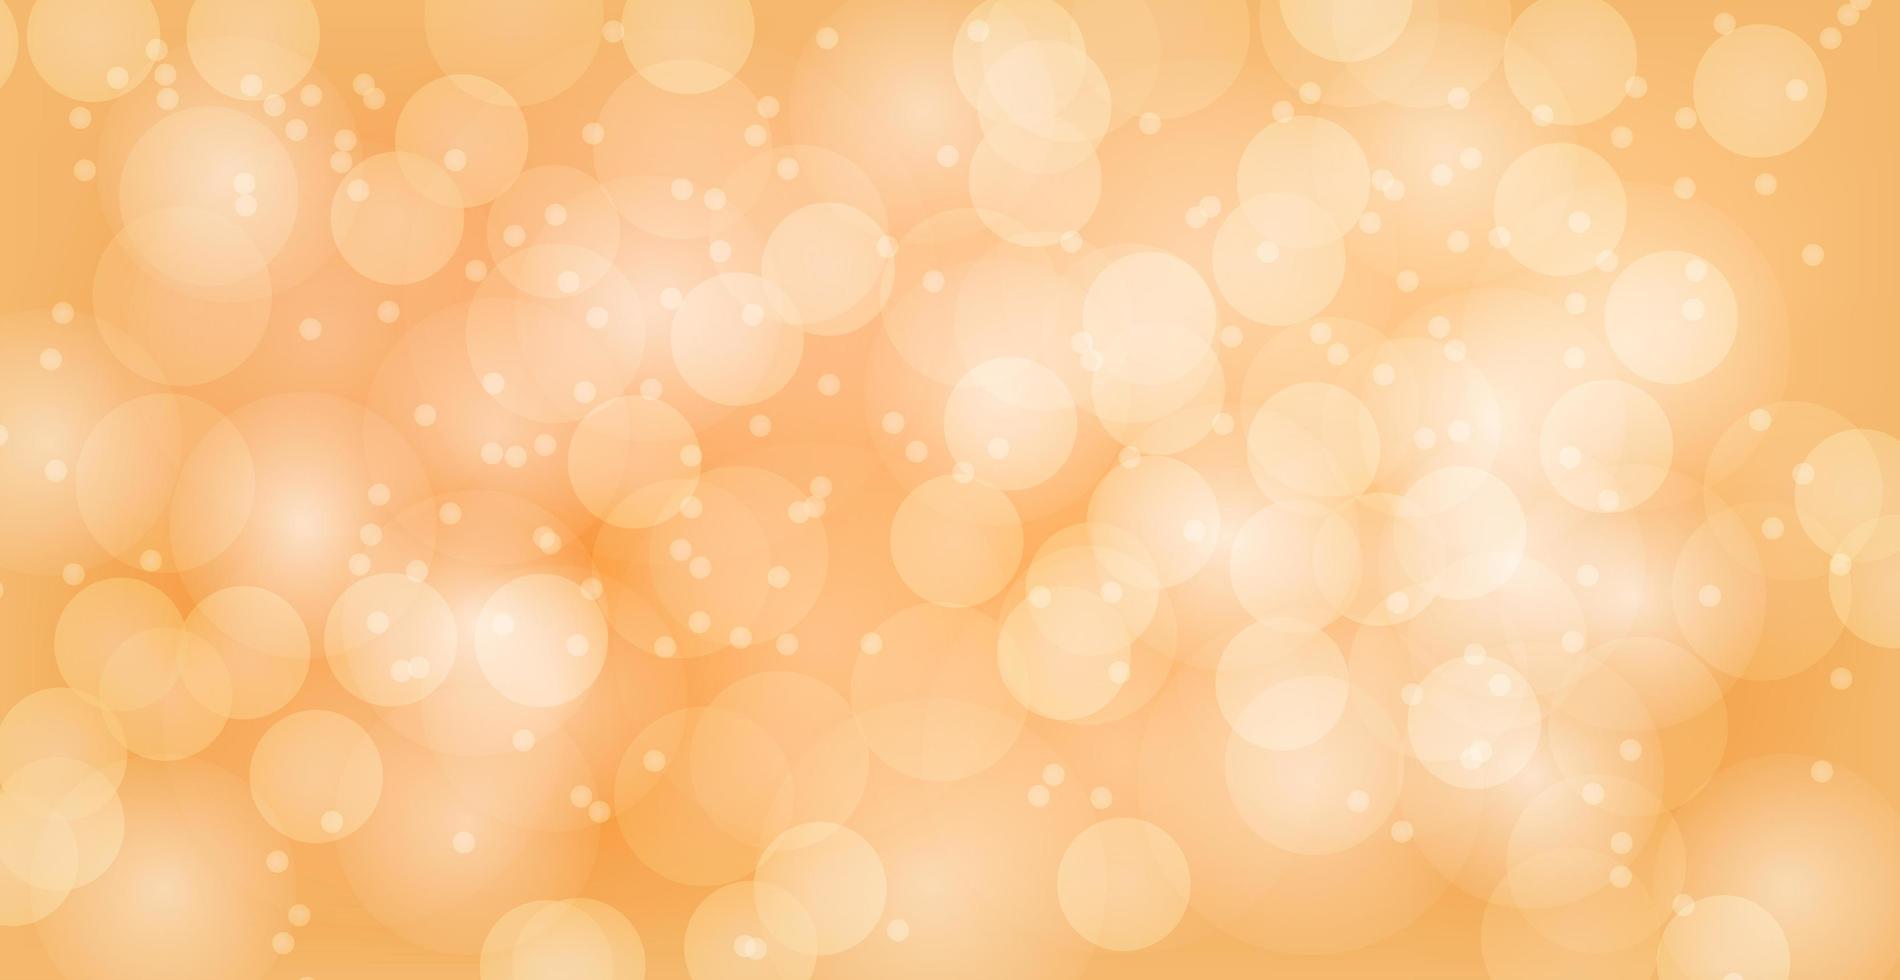 arrière-plan abstrait bokeh jaune avec des cercles défocalisés et des paillettes. élément de décoration pour les vacances de noël et du nouvel an, cartes de voeux, bannières web, affiches - image vectorielle vecteur